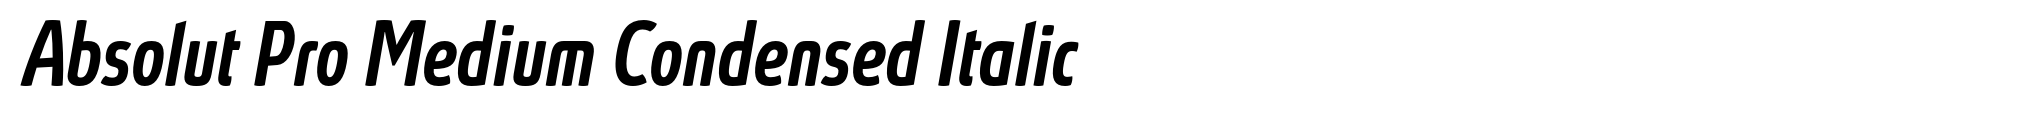 Absolut Pro Medium Condensed Italic image